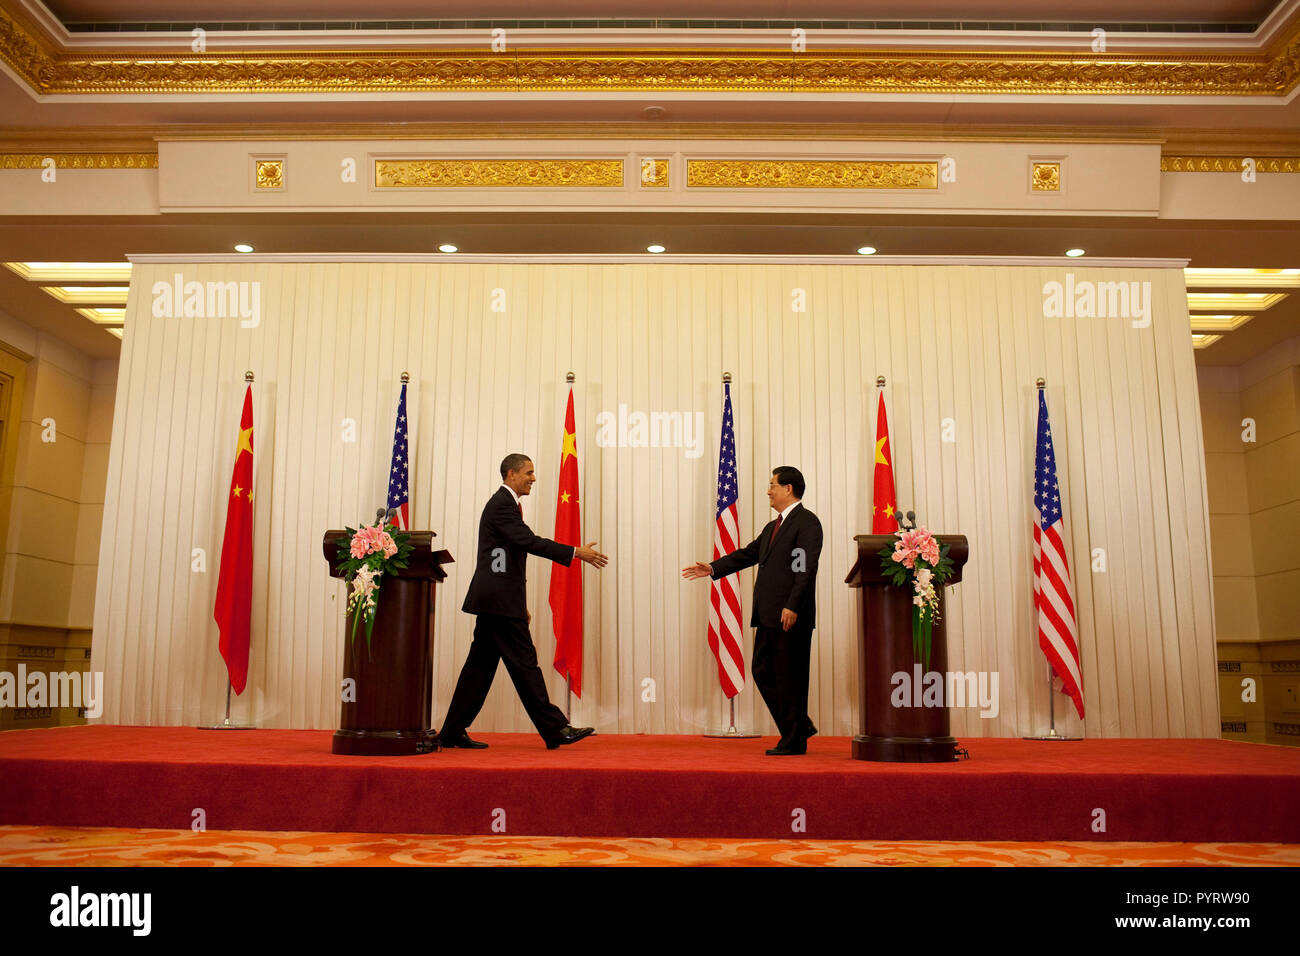 Präsident Barack Obama und der chinesische Präsident Hu Jintao die Hände nach einer Pressekonferenz in der Großen Halle des Volkes in Peking, China, November 17, 2009 zu schütteln. Stockfoto